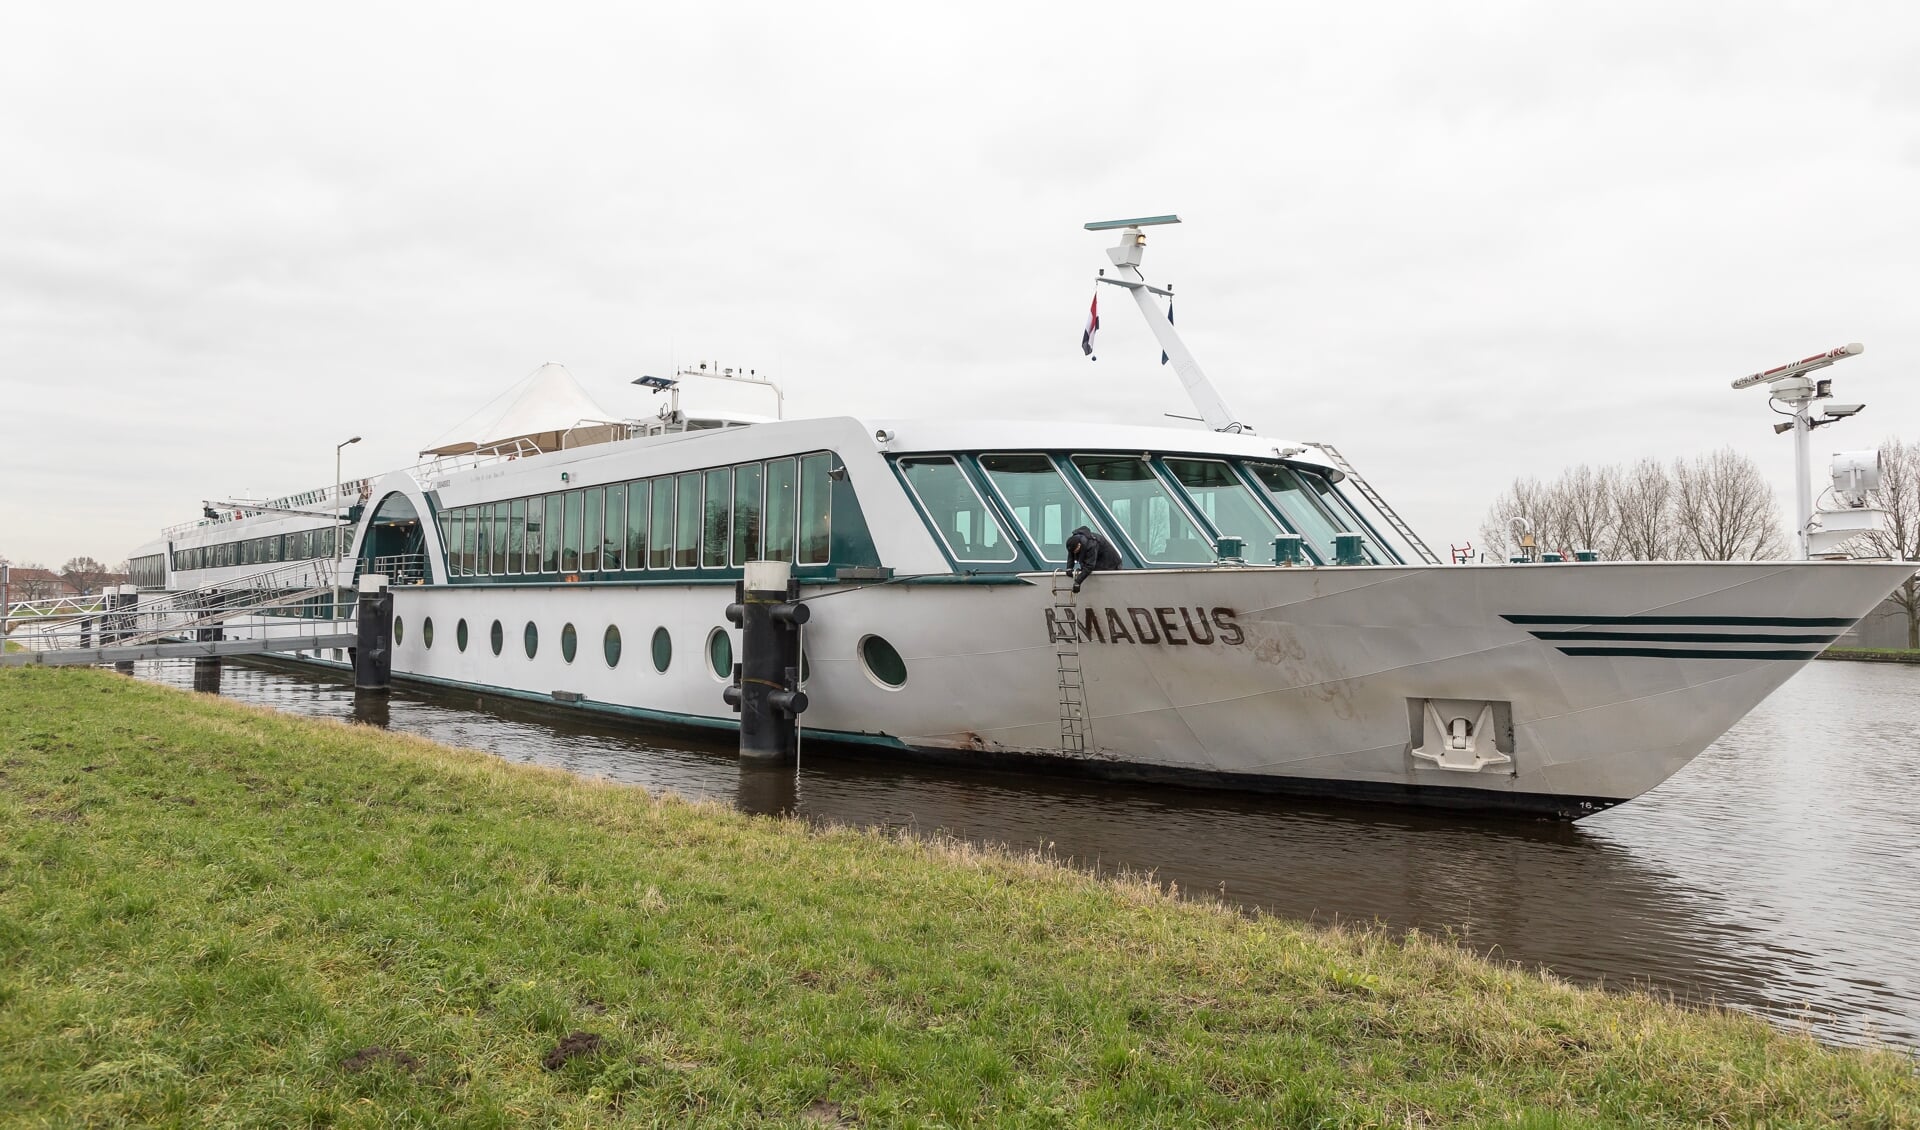 de hotelboot in het Gouwekanaal biedt plaats aan 146 personen